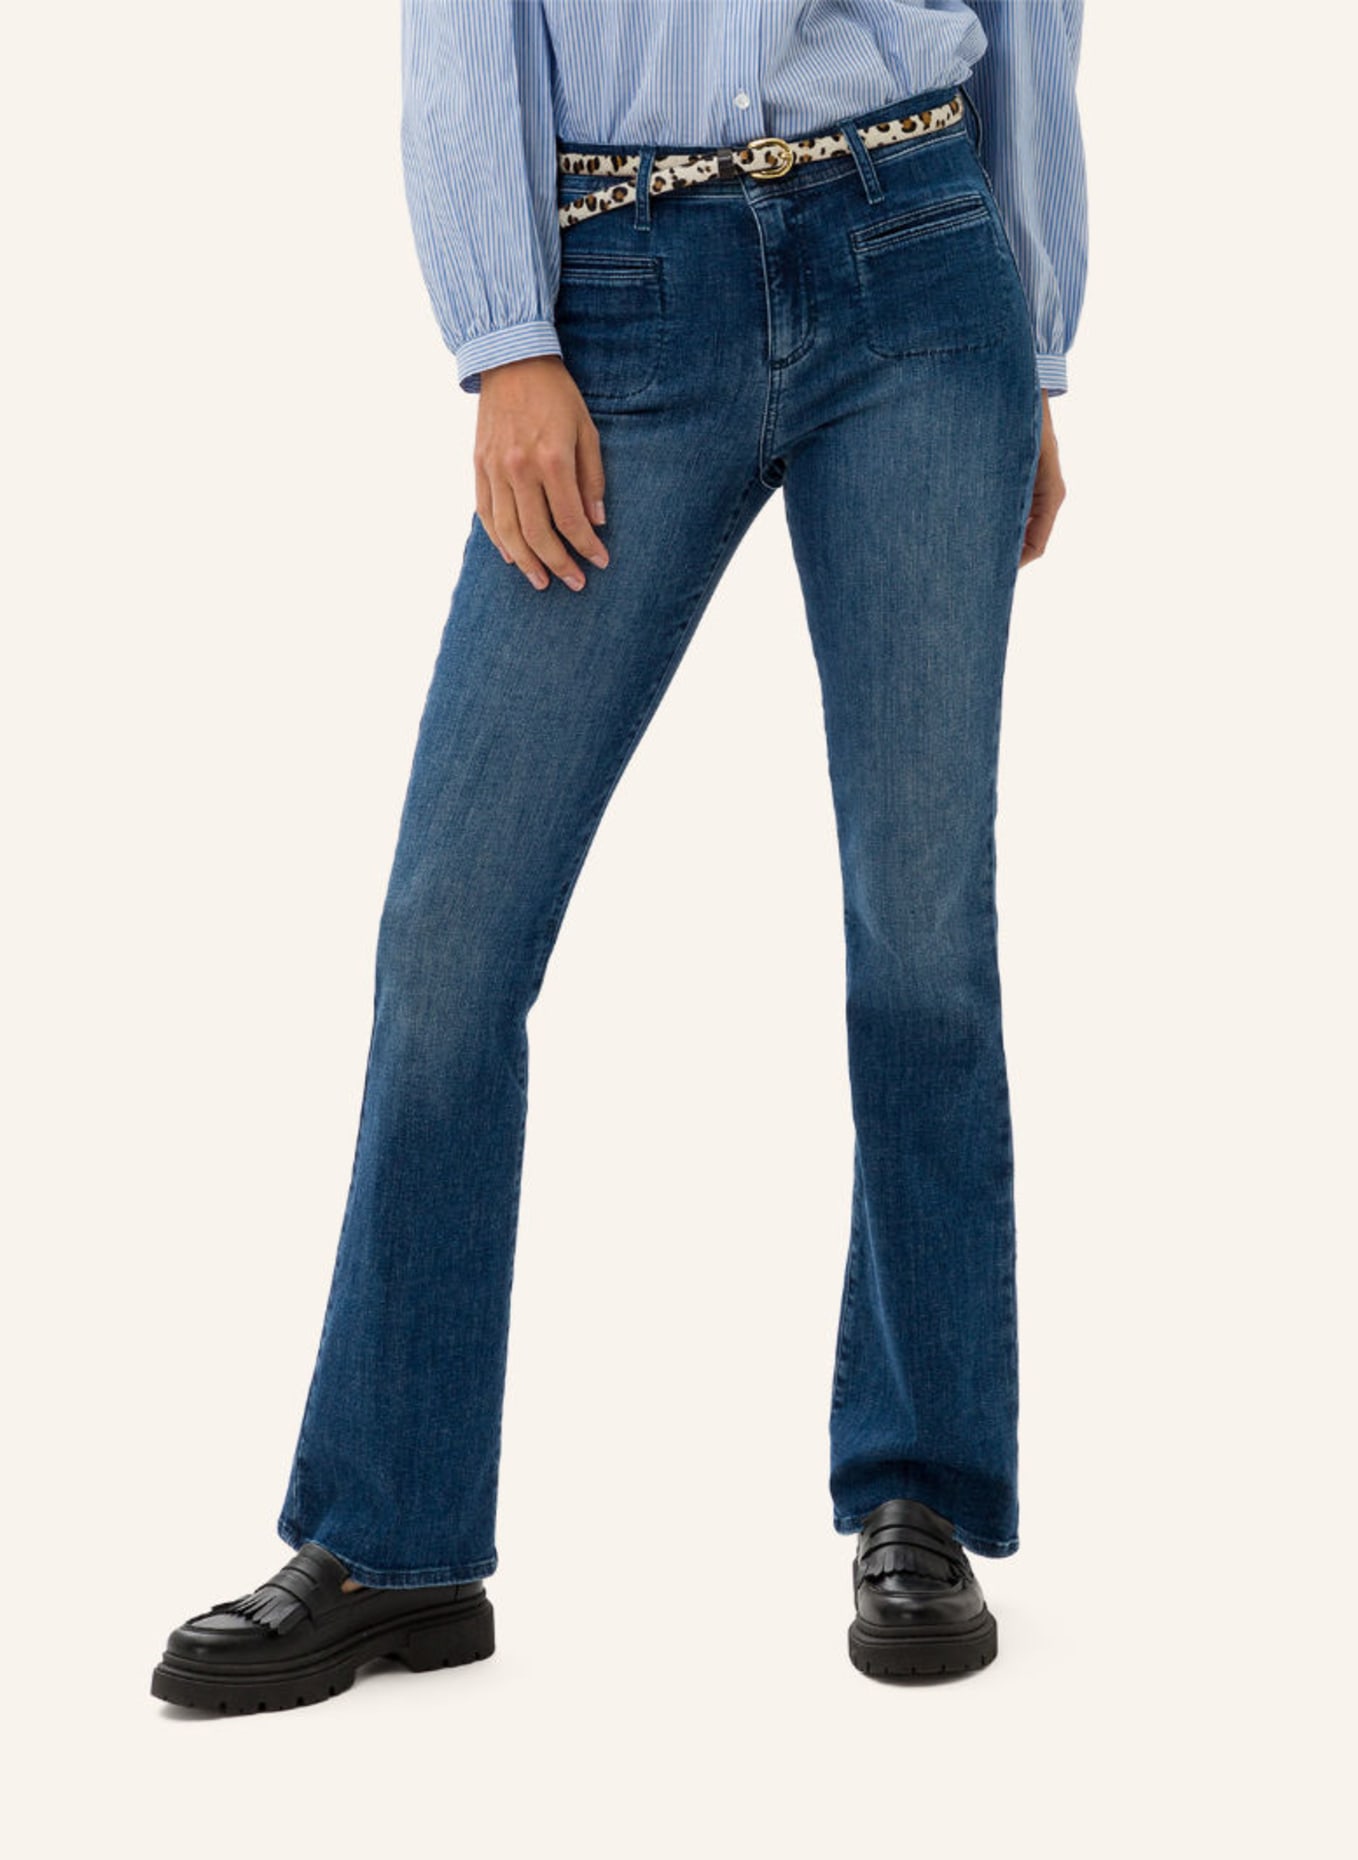 SHAKIRA BRAX blau STYLE in Jeans